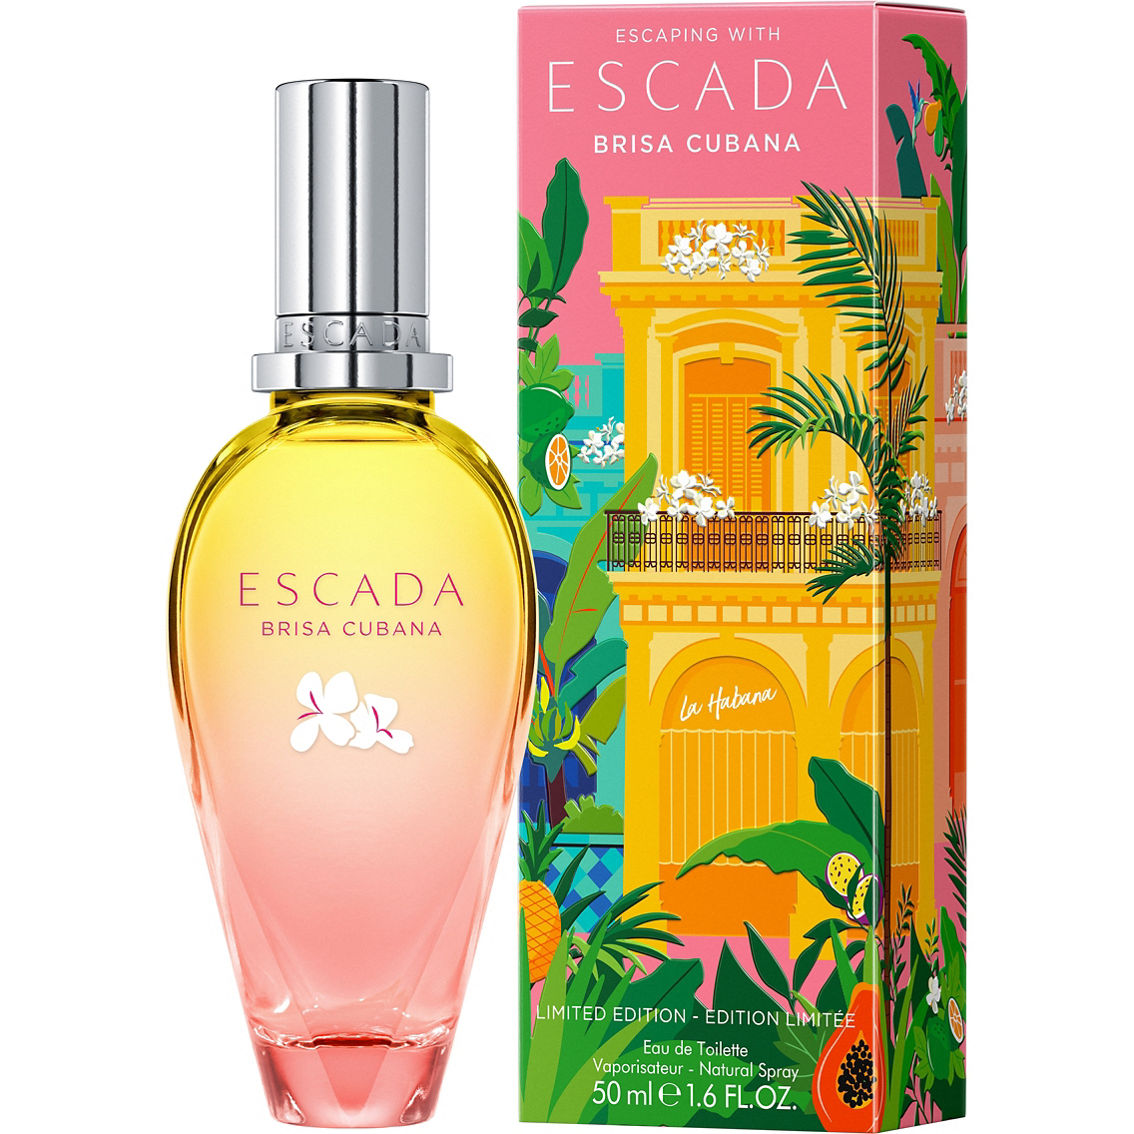 Escada Brisa Cubana Limited Edition Eau de Toilette Spray - Image 2 of 3